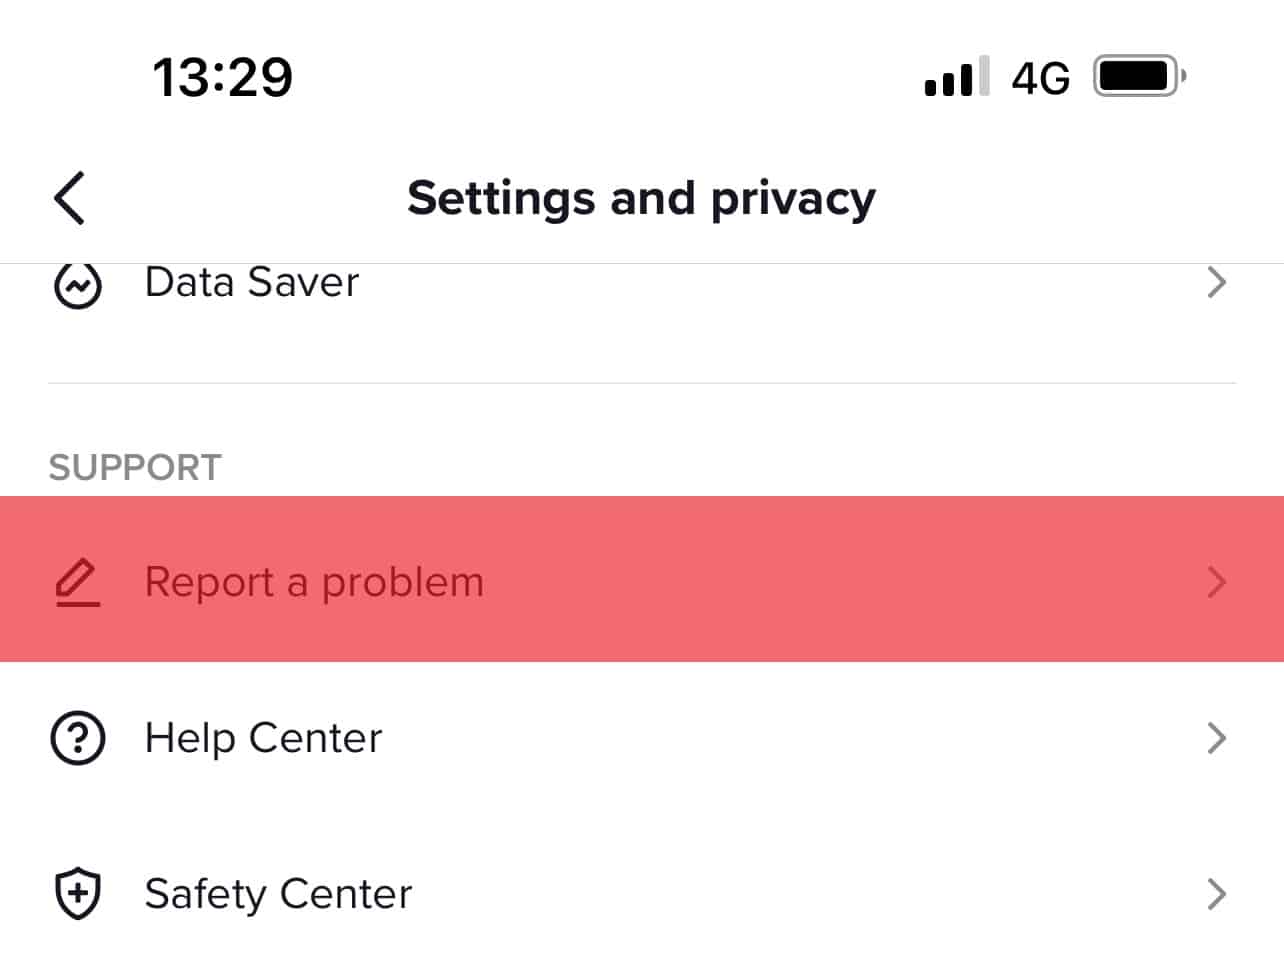 Select Report A Problem